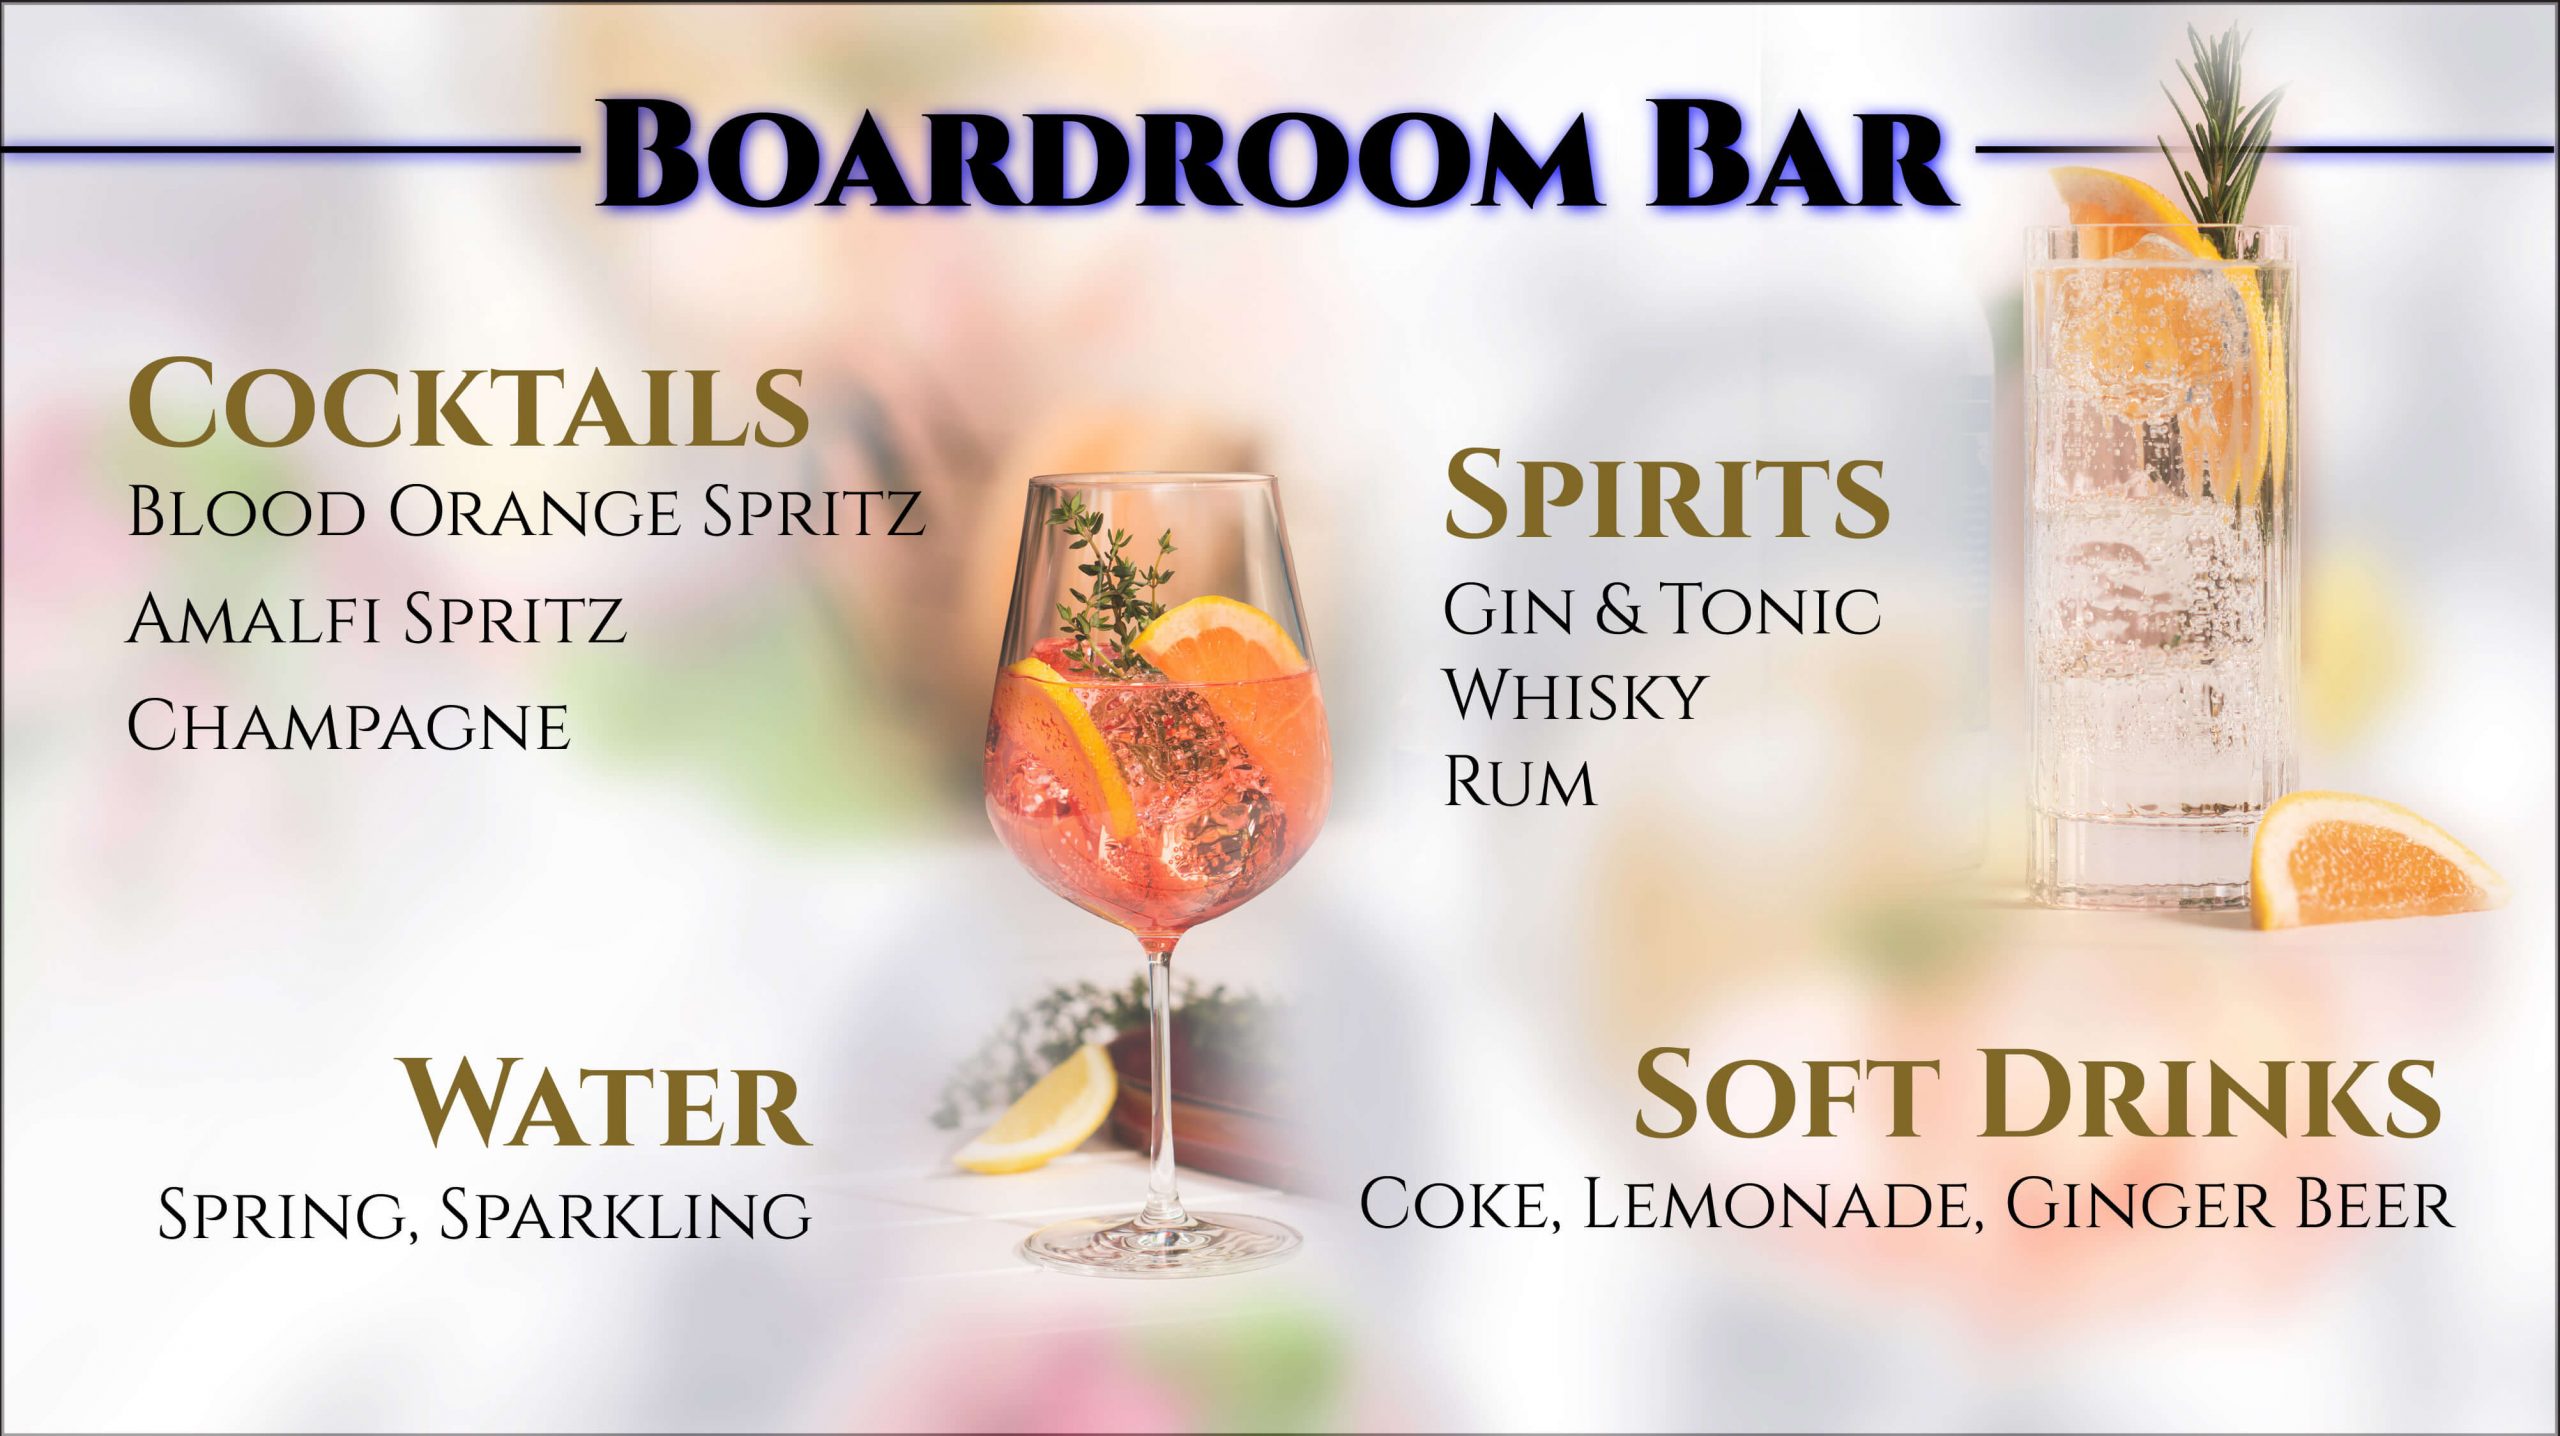 Boardroom Bar Menu